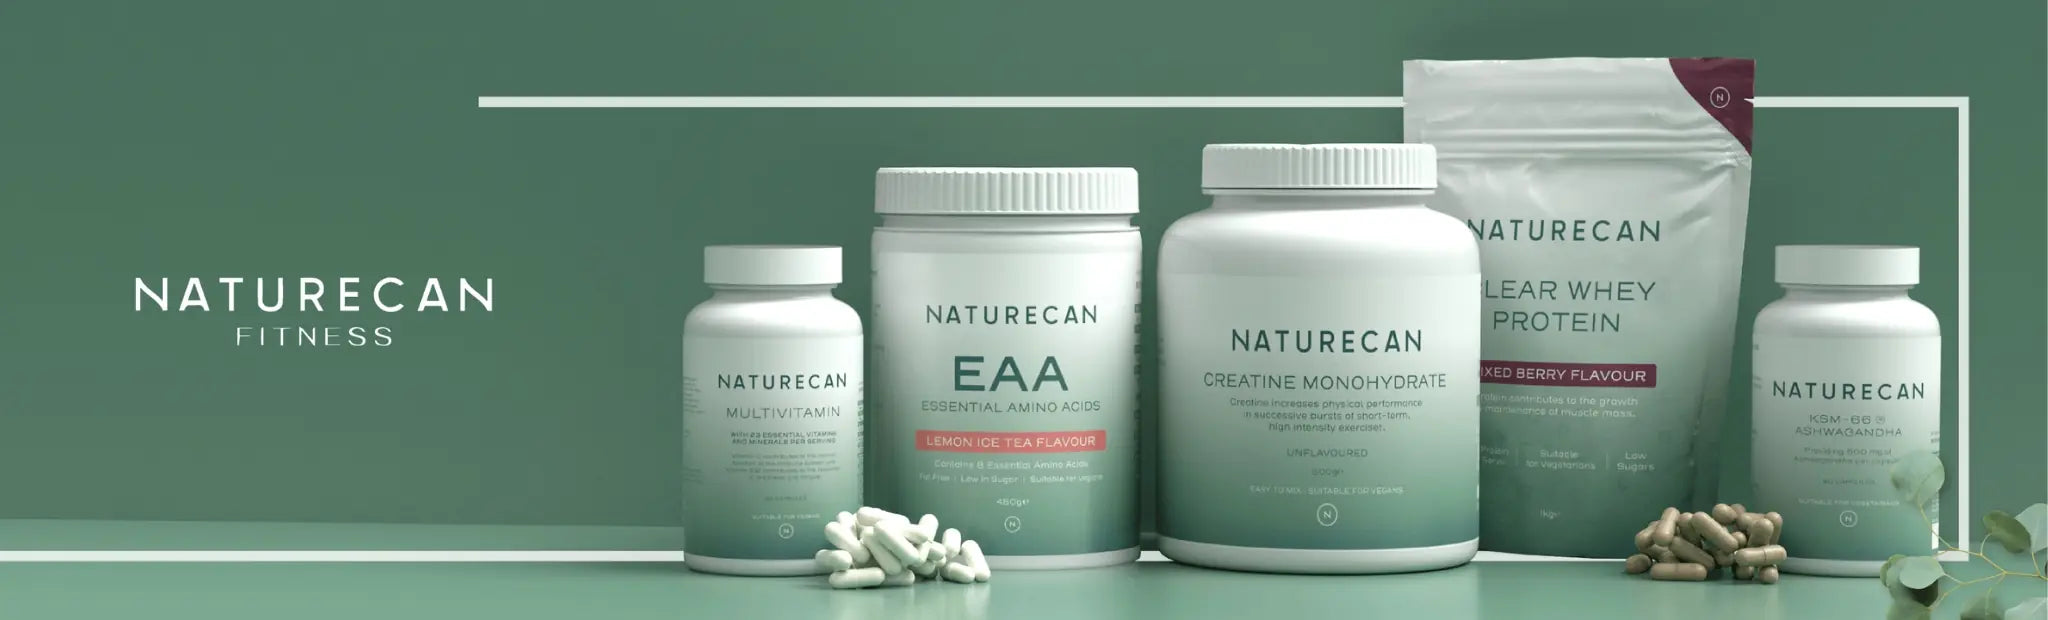 Naturecan Fitness - Supplements